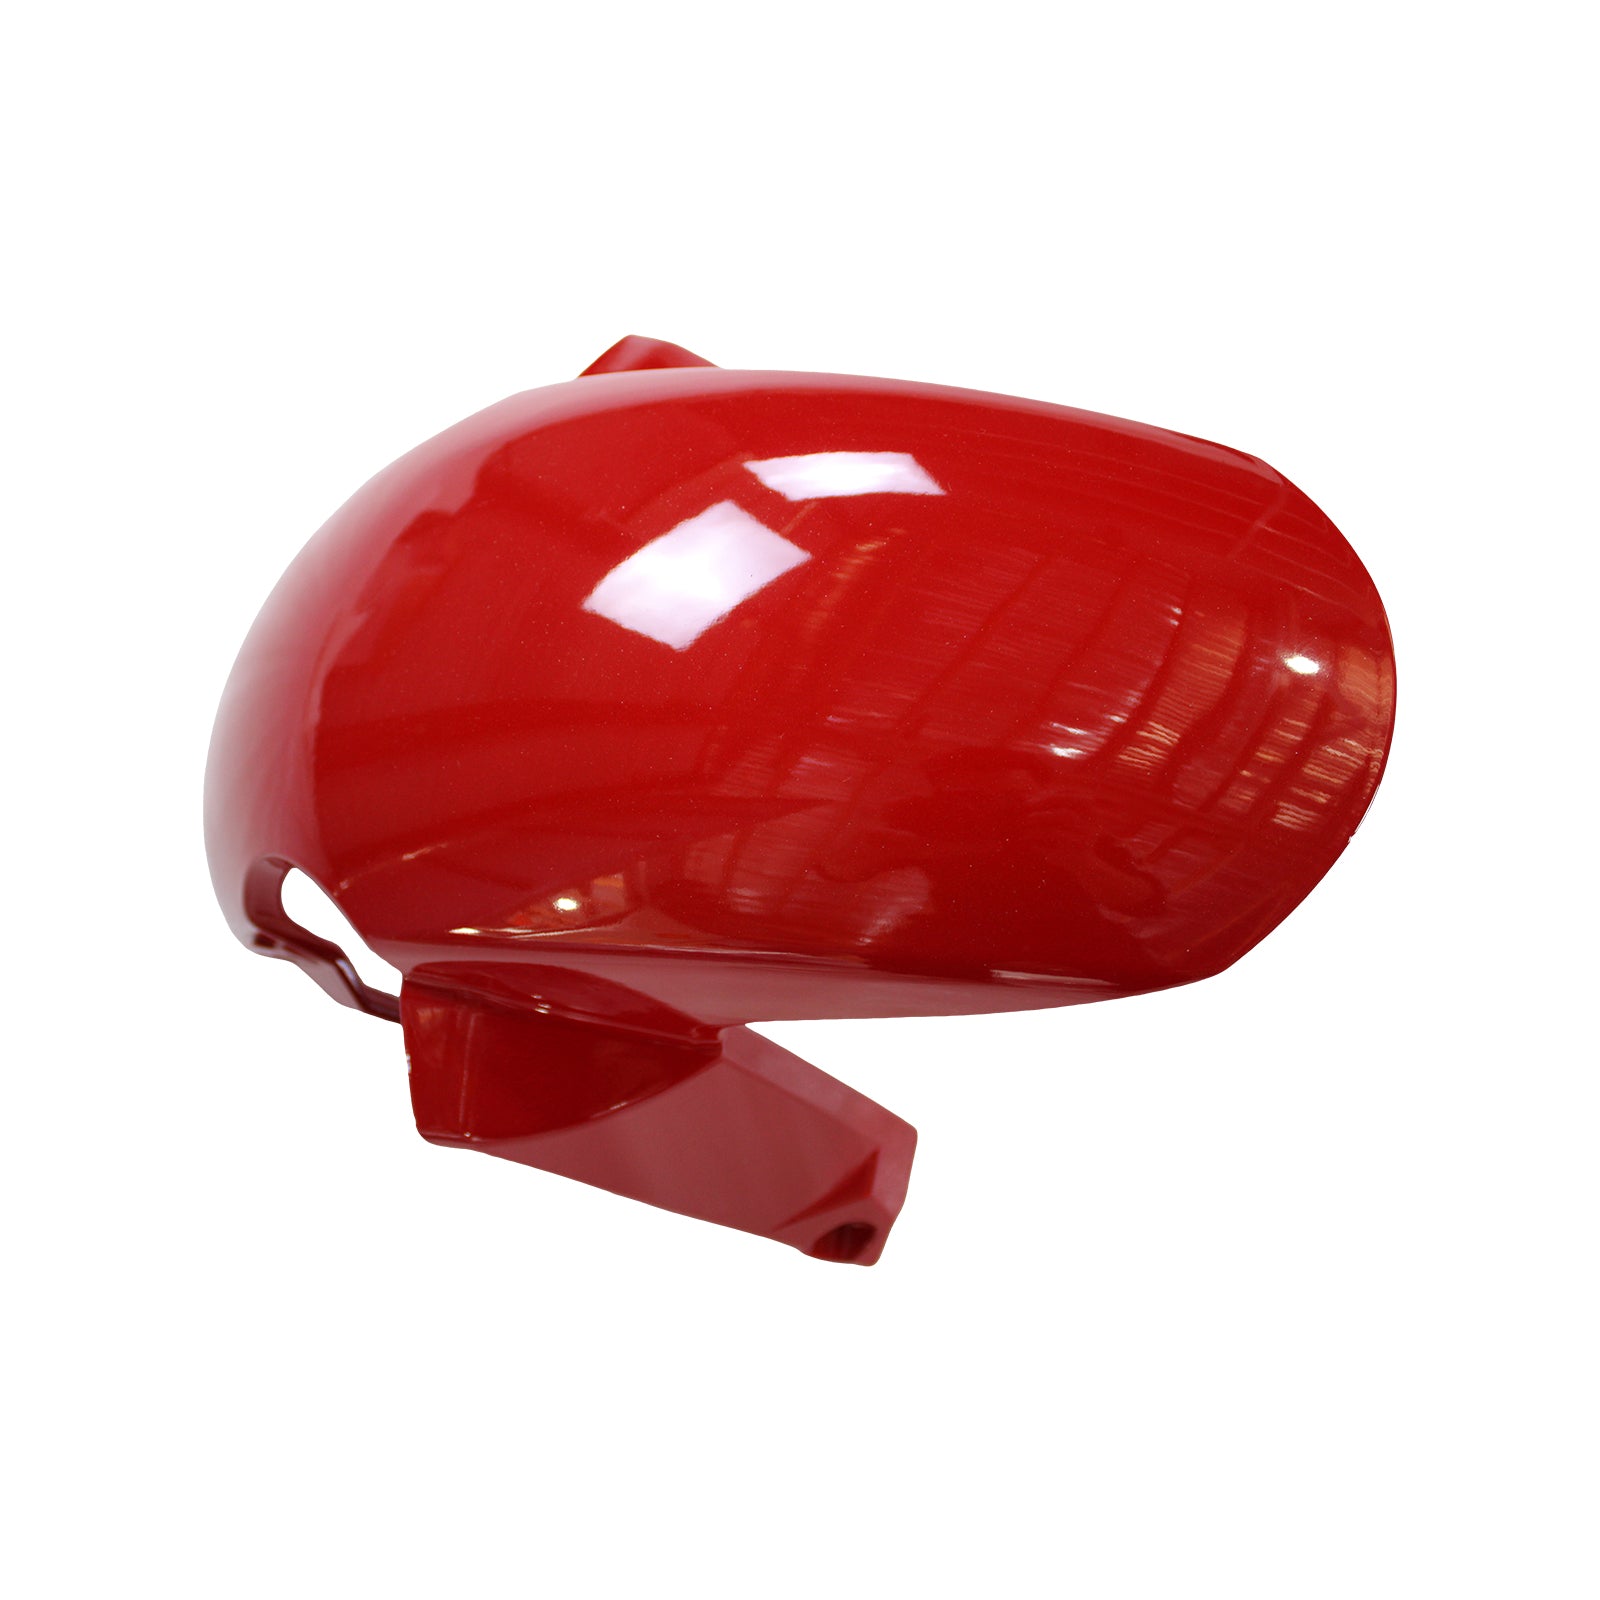 Kit carena rossa Amotopart 2022-2023 CBR500R Honda